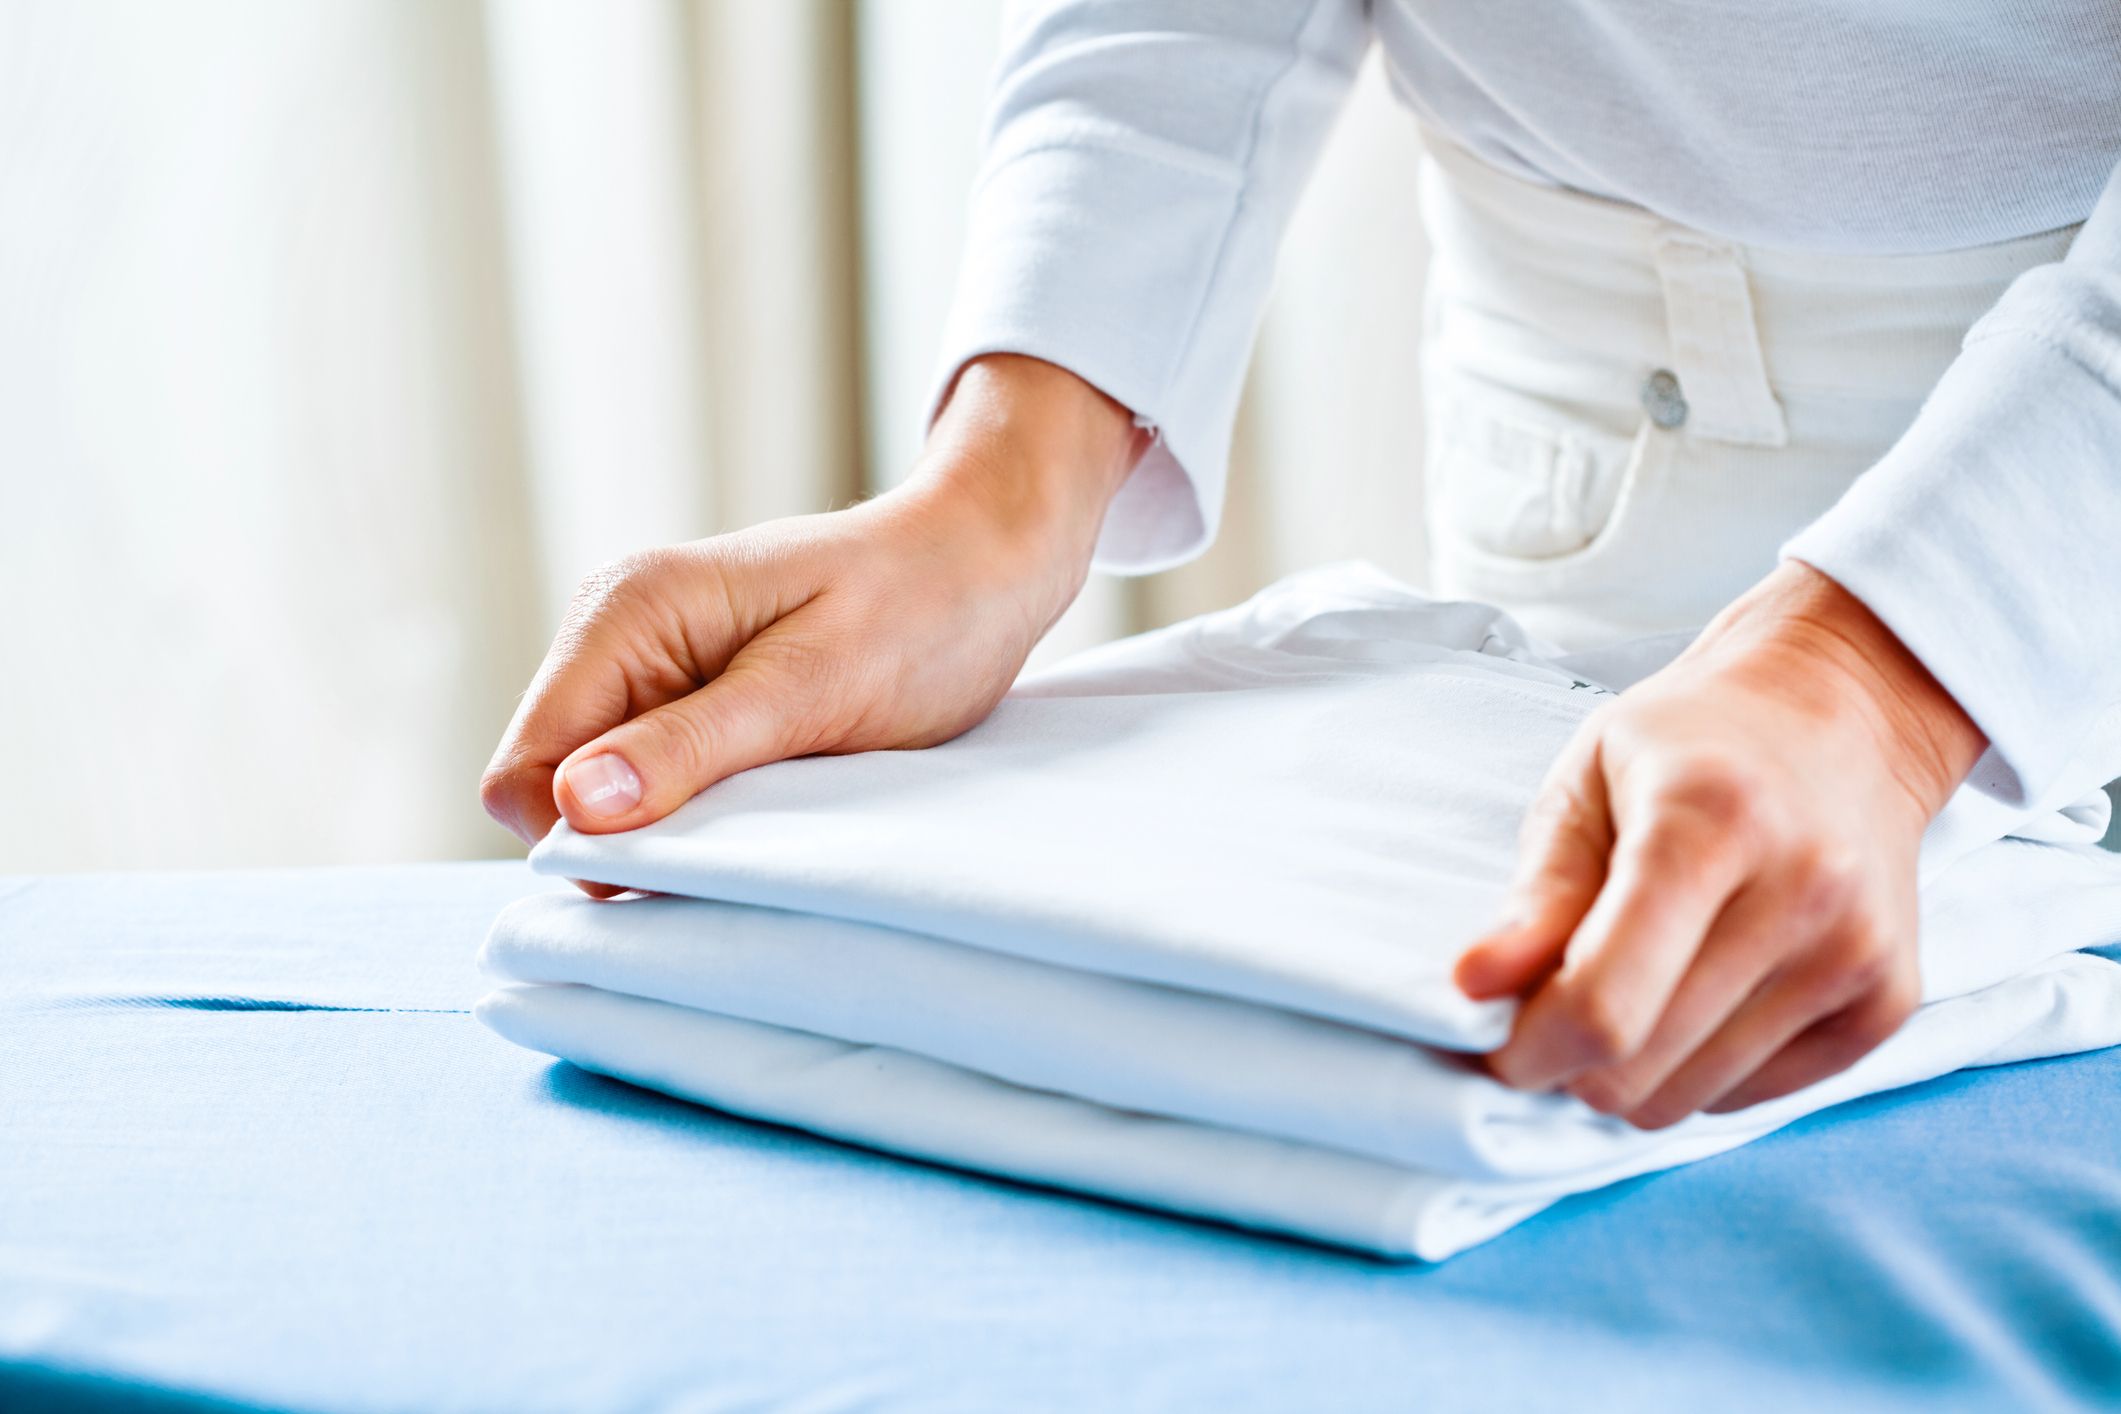 5 Best Ways To Fold A Shirt How To Fold A Shirt Like Marie Kondo